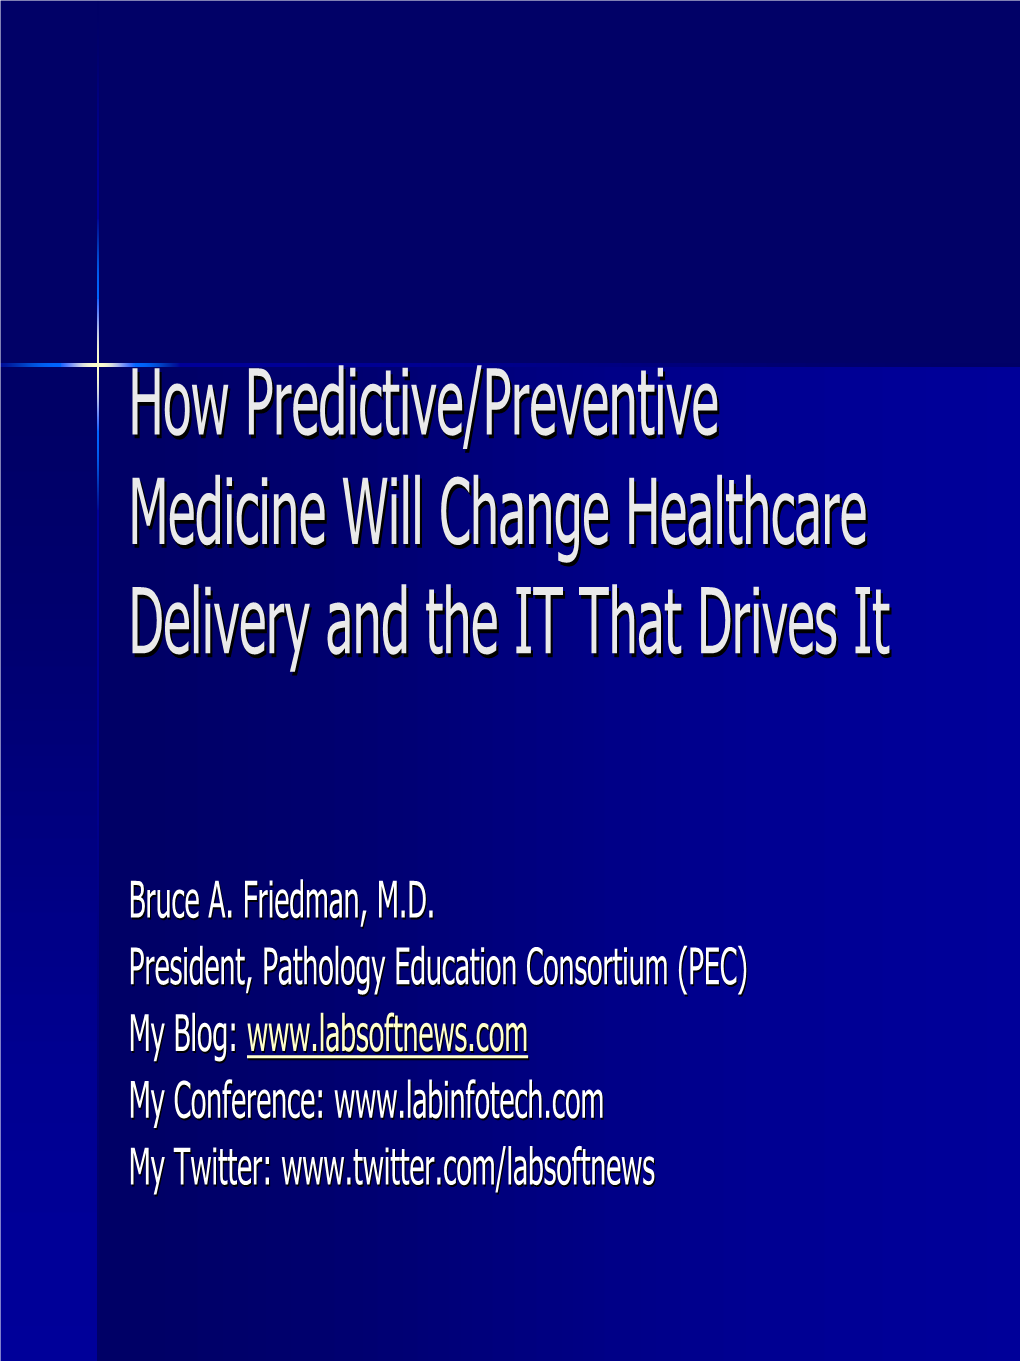 How Predictive/Preventive Medicine Will Change Healthcare Delivery